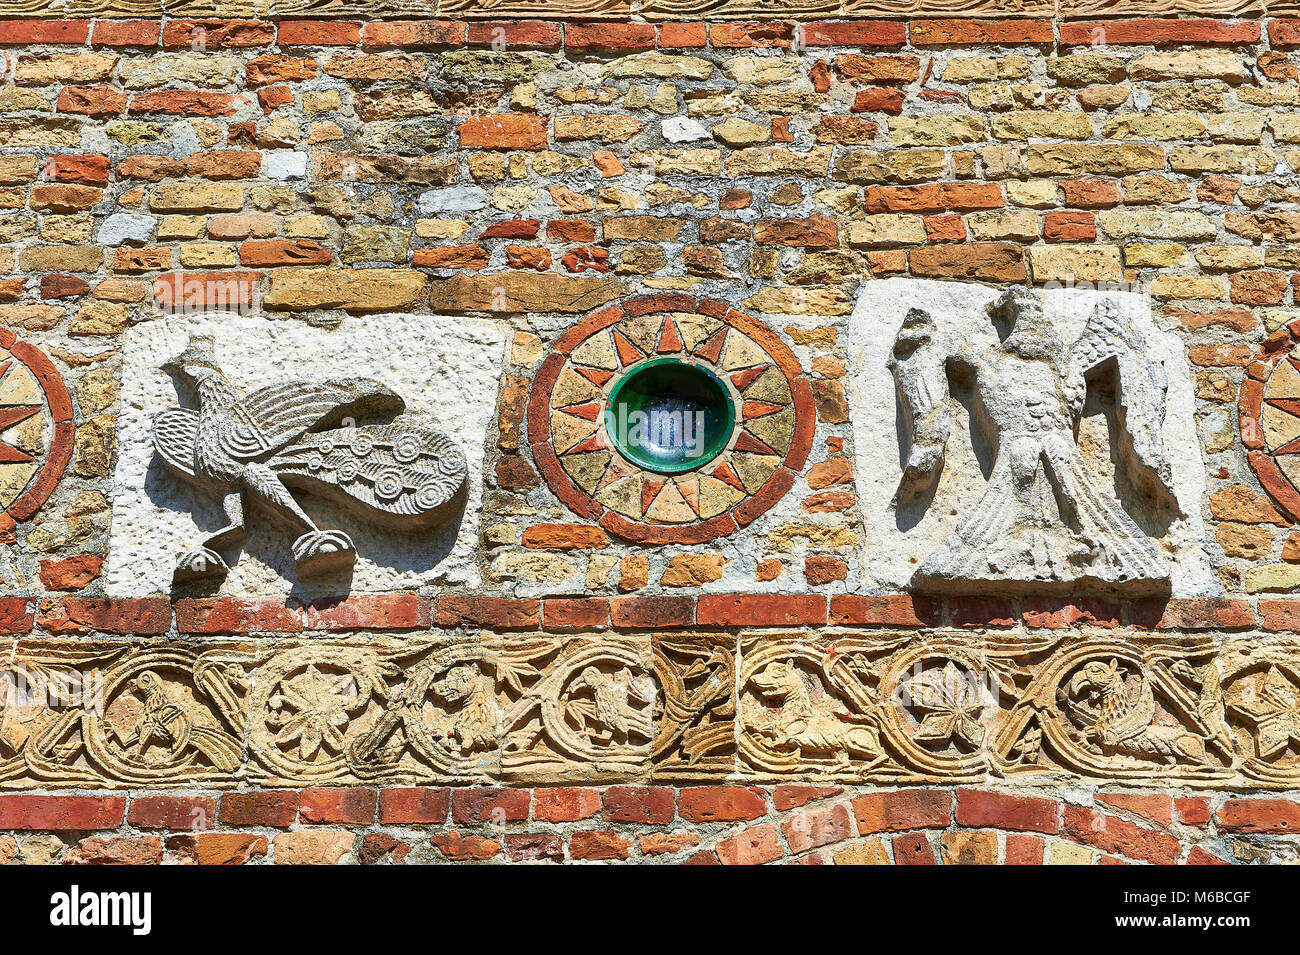 Roanesque sculpture relief détails sur la 11e centruy portique de l'église de Santa Maria, l'abbaye bénédictine de Pomposa, Emilia-Romagna, Italie. Banque D'Images